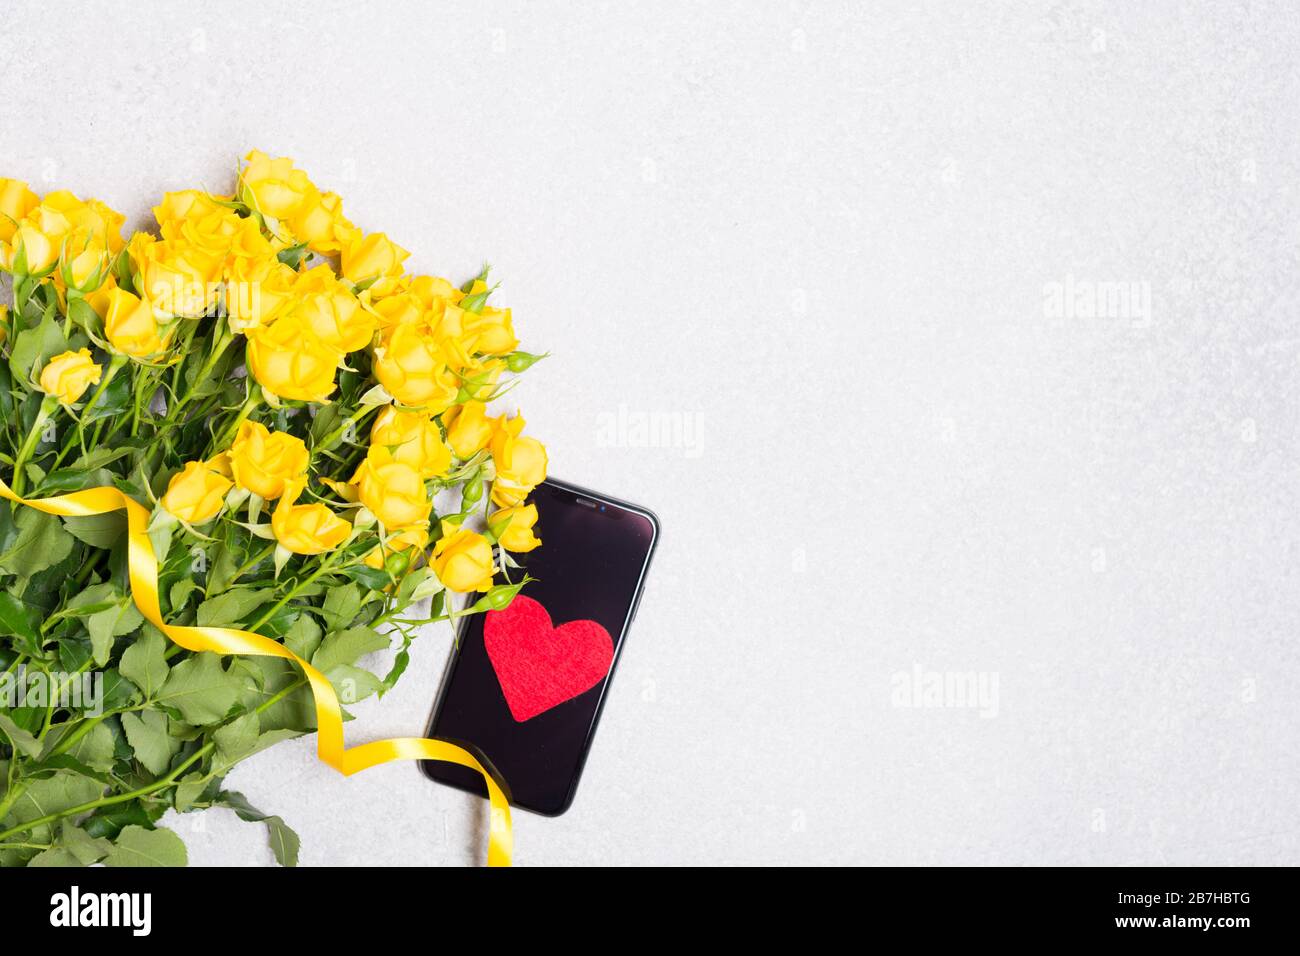 Gelbe Rosen Blumen und Telefon mit rotem Herz auf weißem Tisch Hintergrund Draufsicht verspottet freien Platz Stockfoto